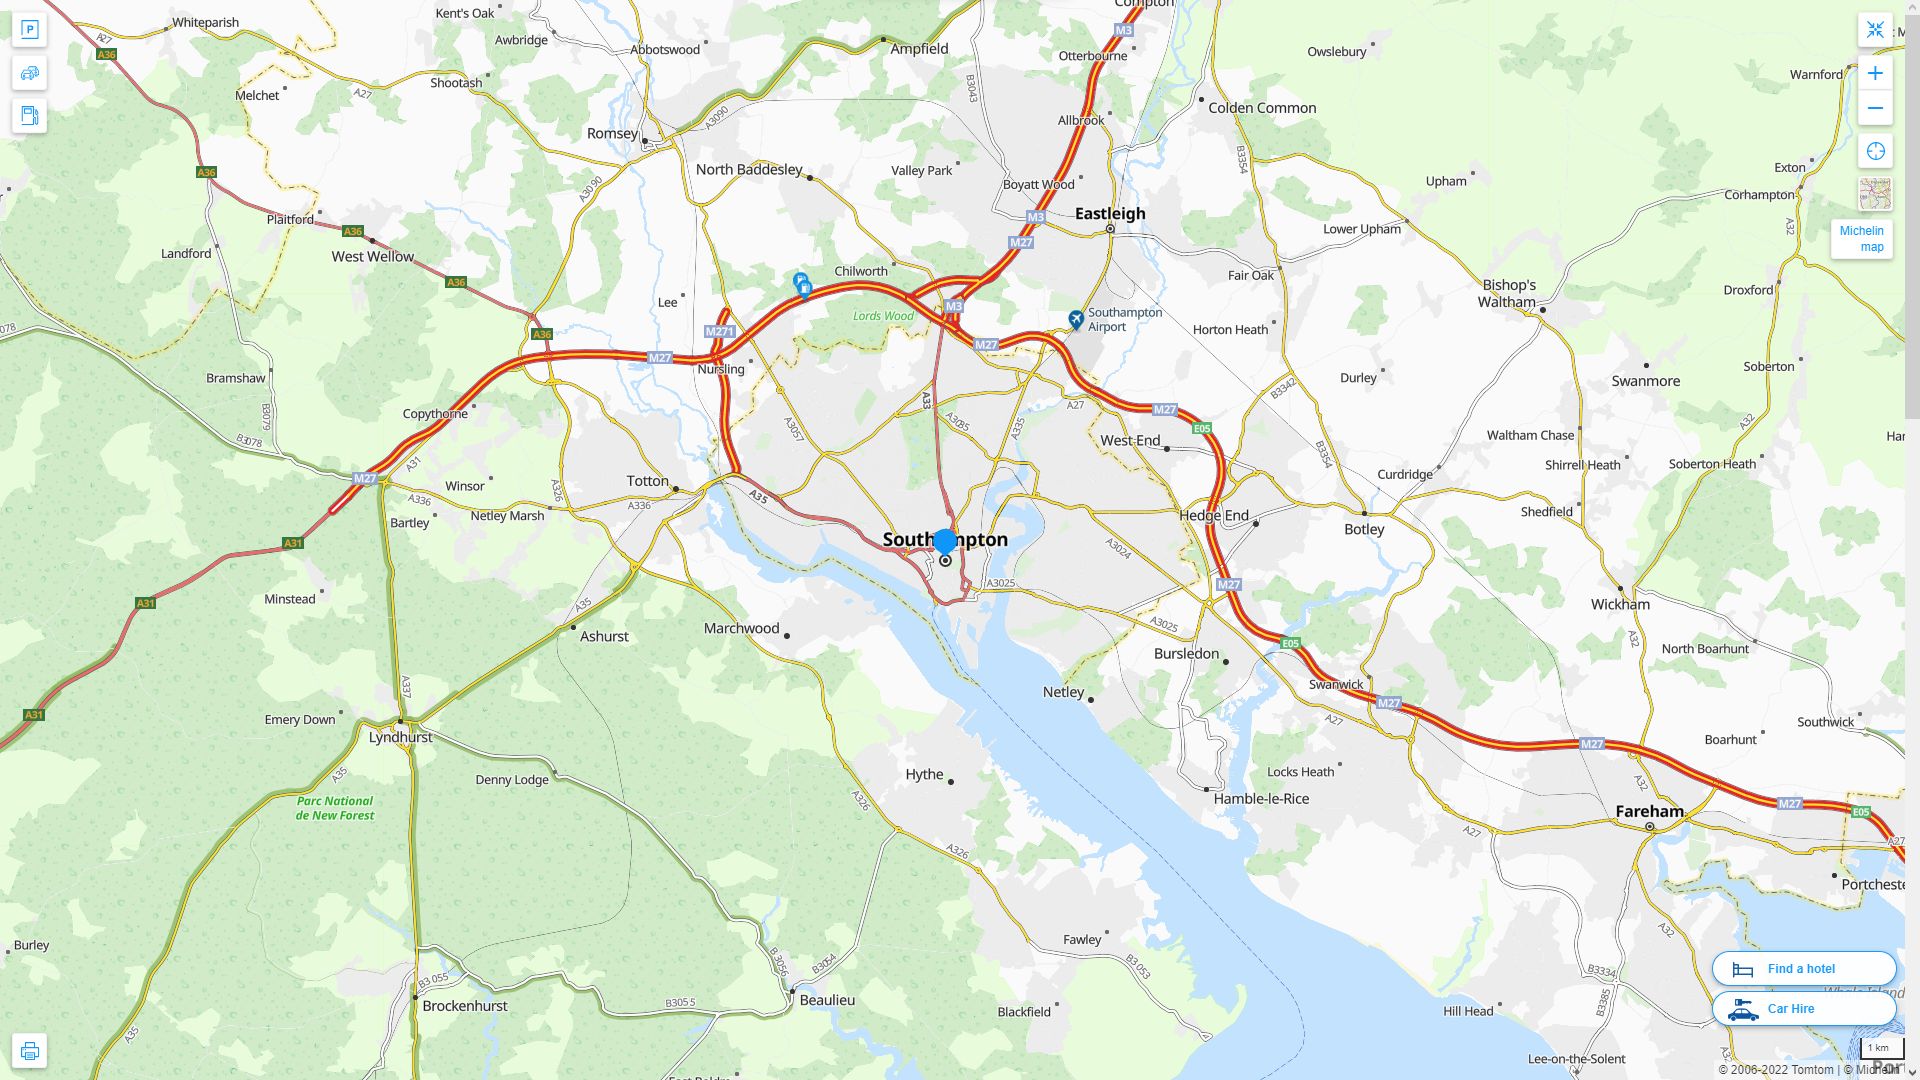 Southampton Royaume Uni Autoroute et carte routiere